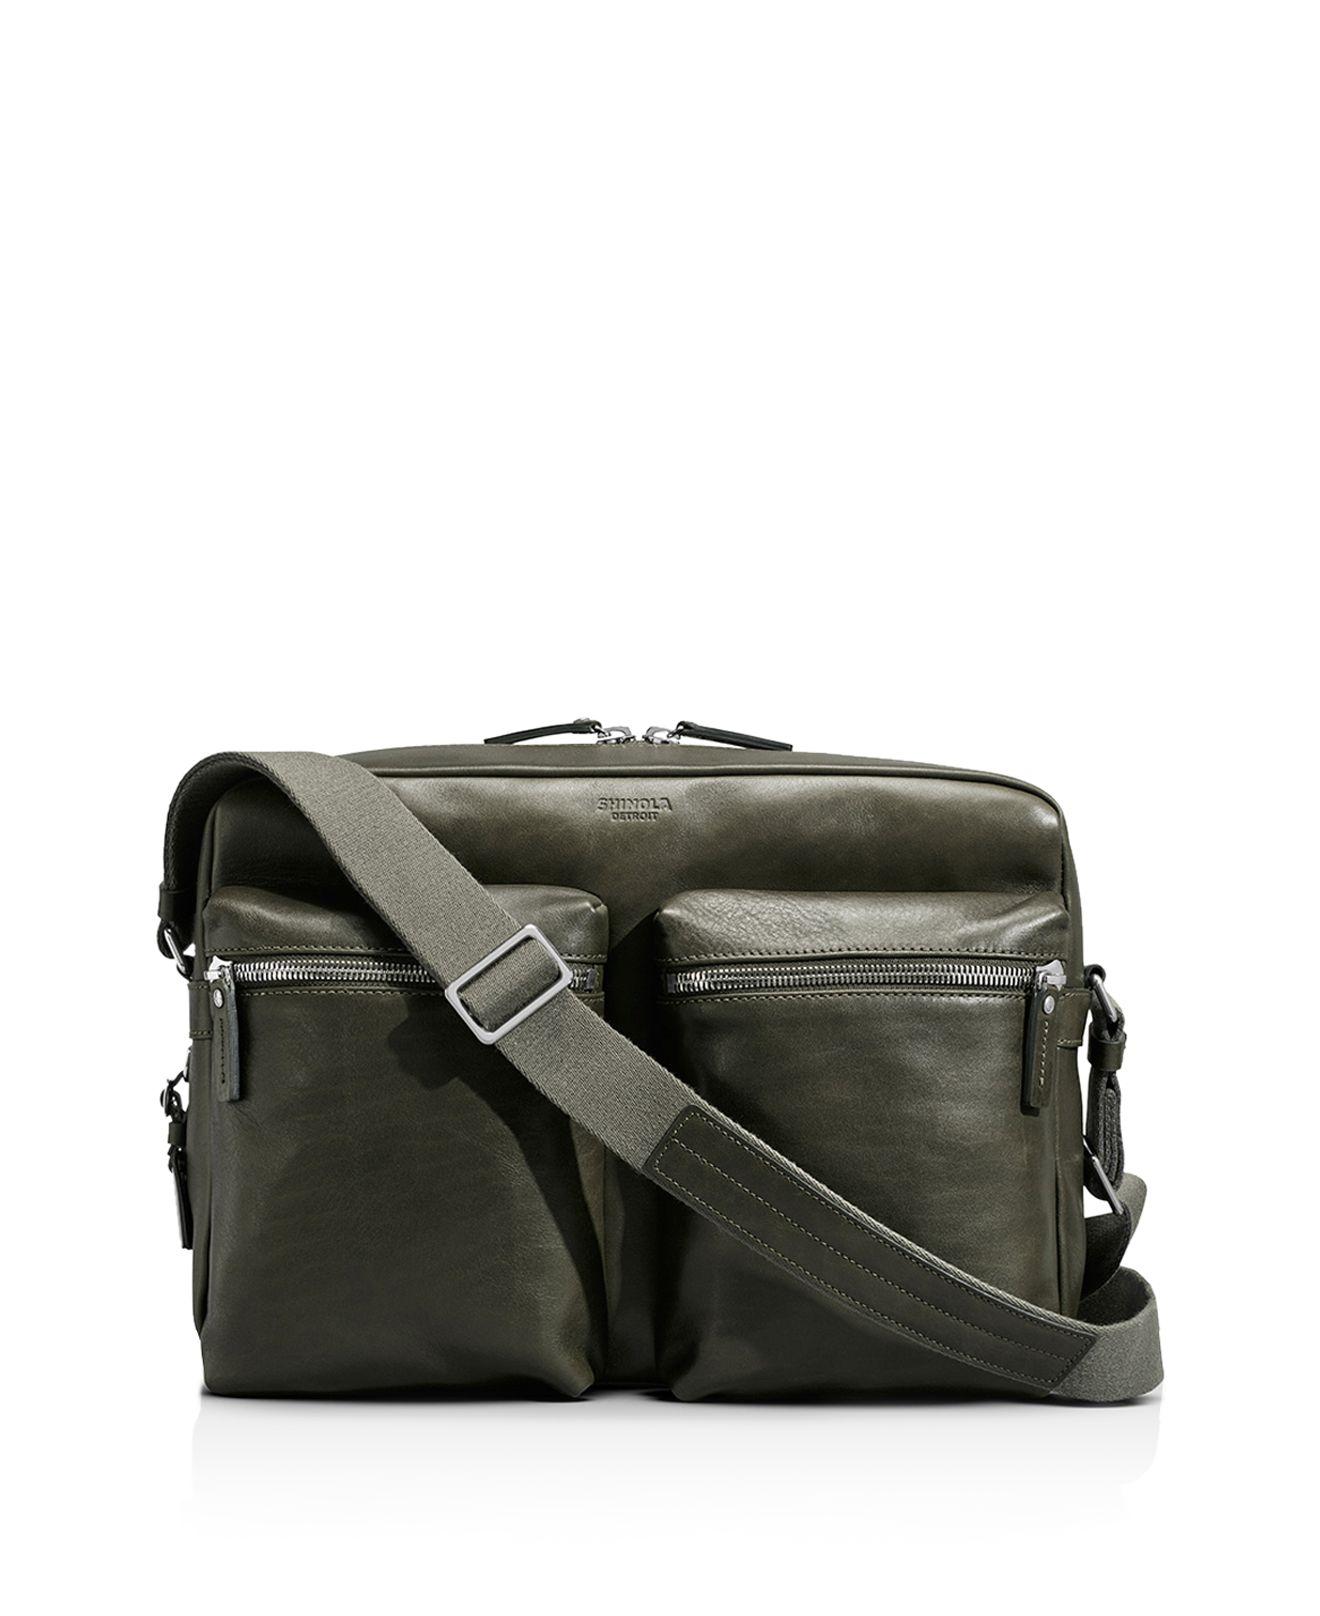 Lyst - Shinola Zip Top Messenger Bag in Green for Men